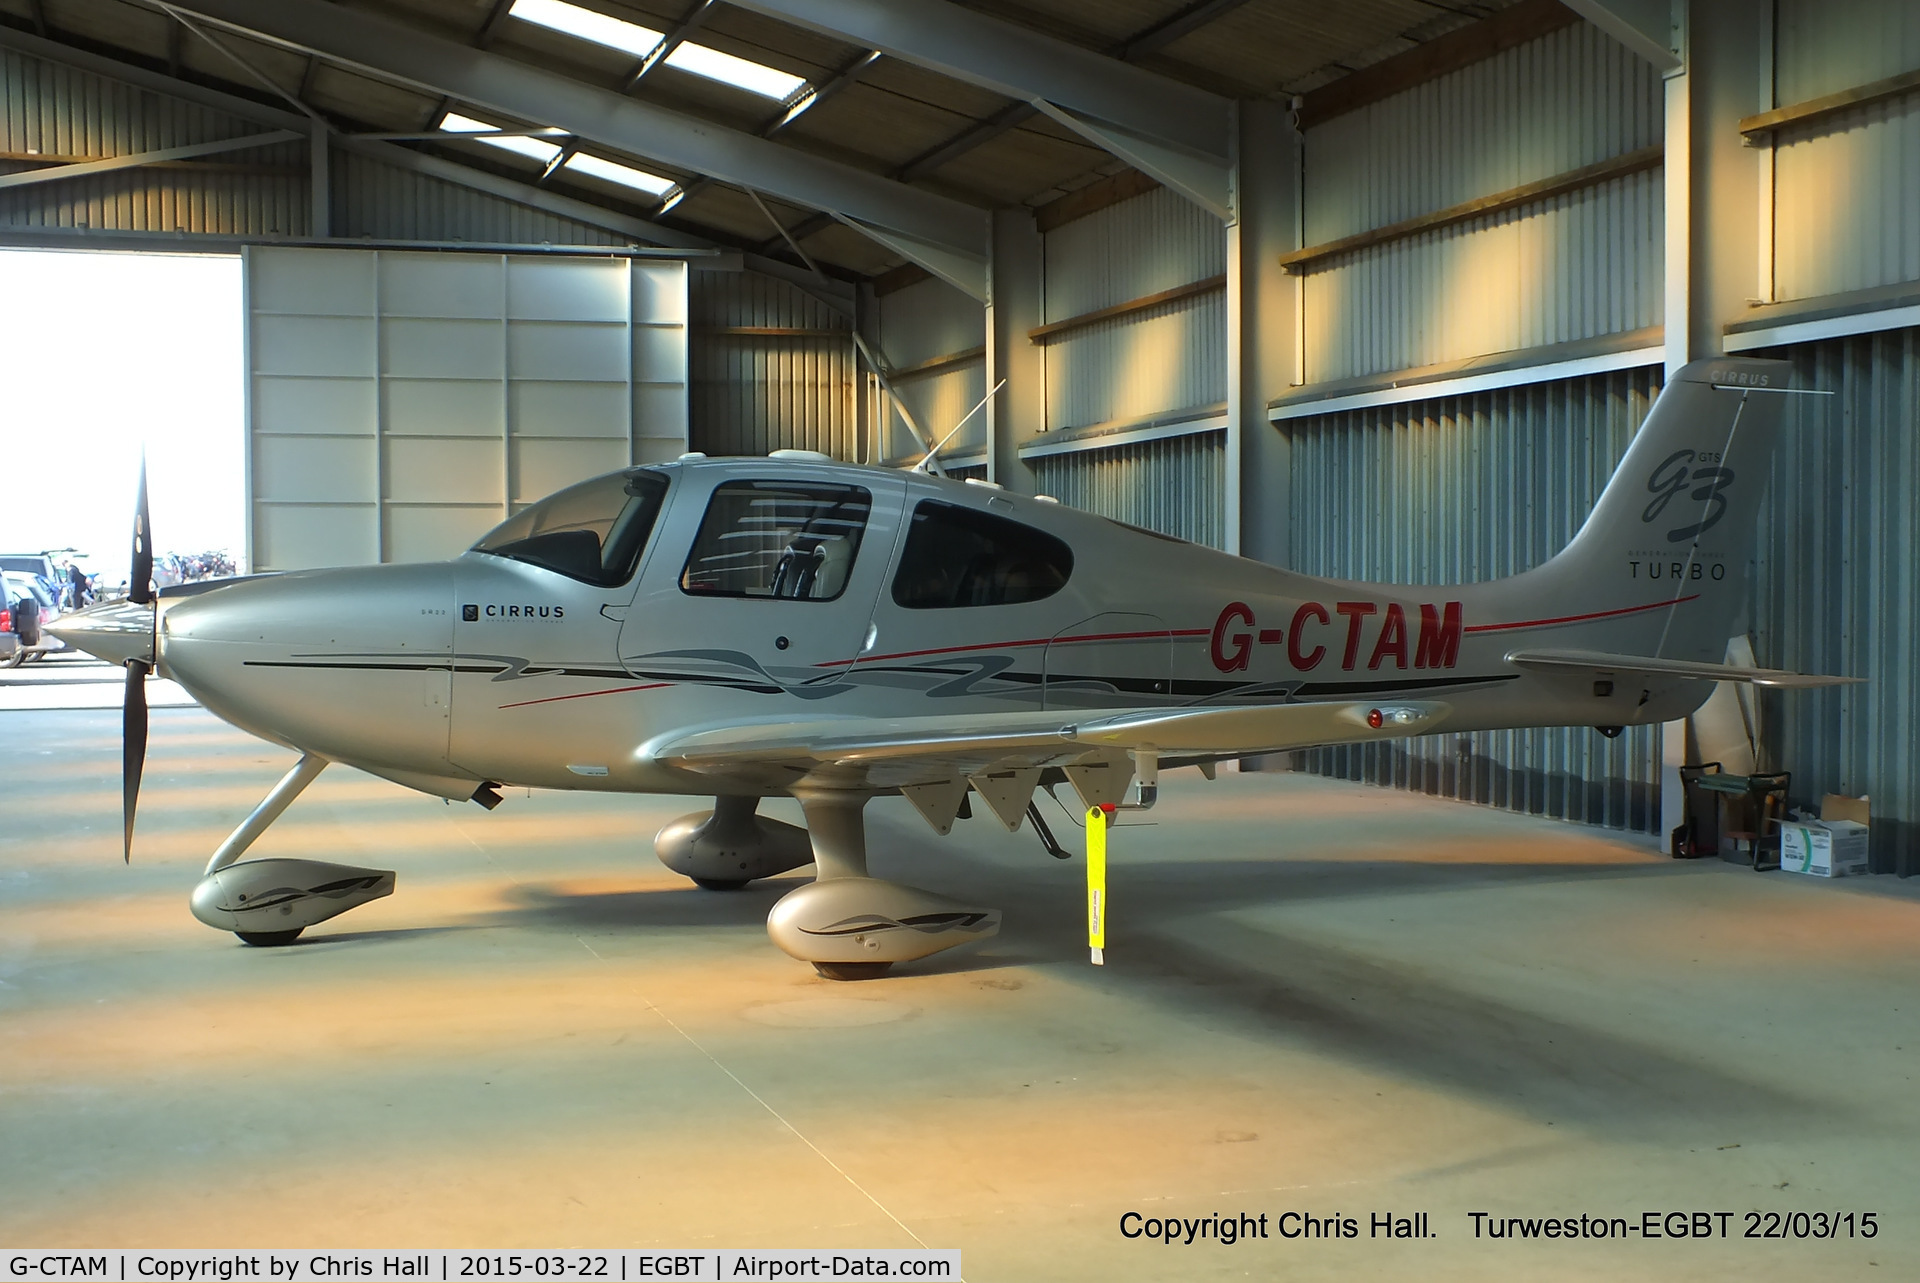 G-CTAM, 2007 Cirrus SR22 G3 GTS Turbo C/N 2740, Turweston resident